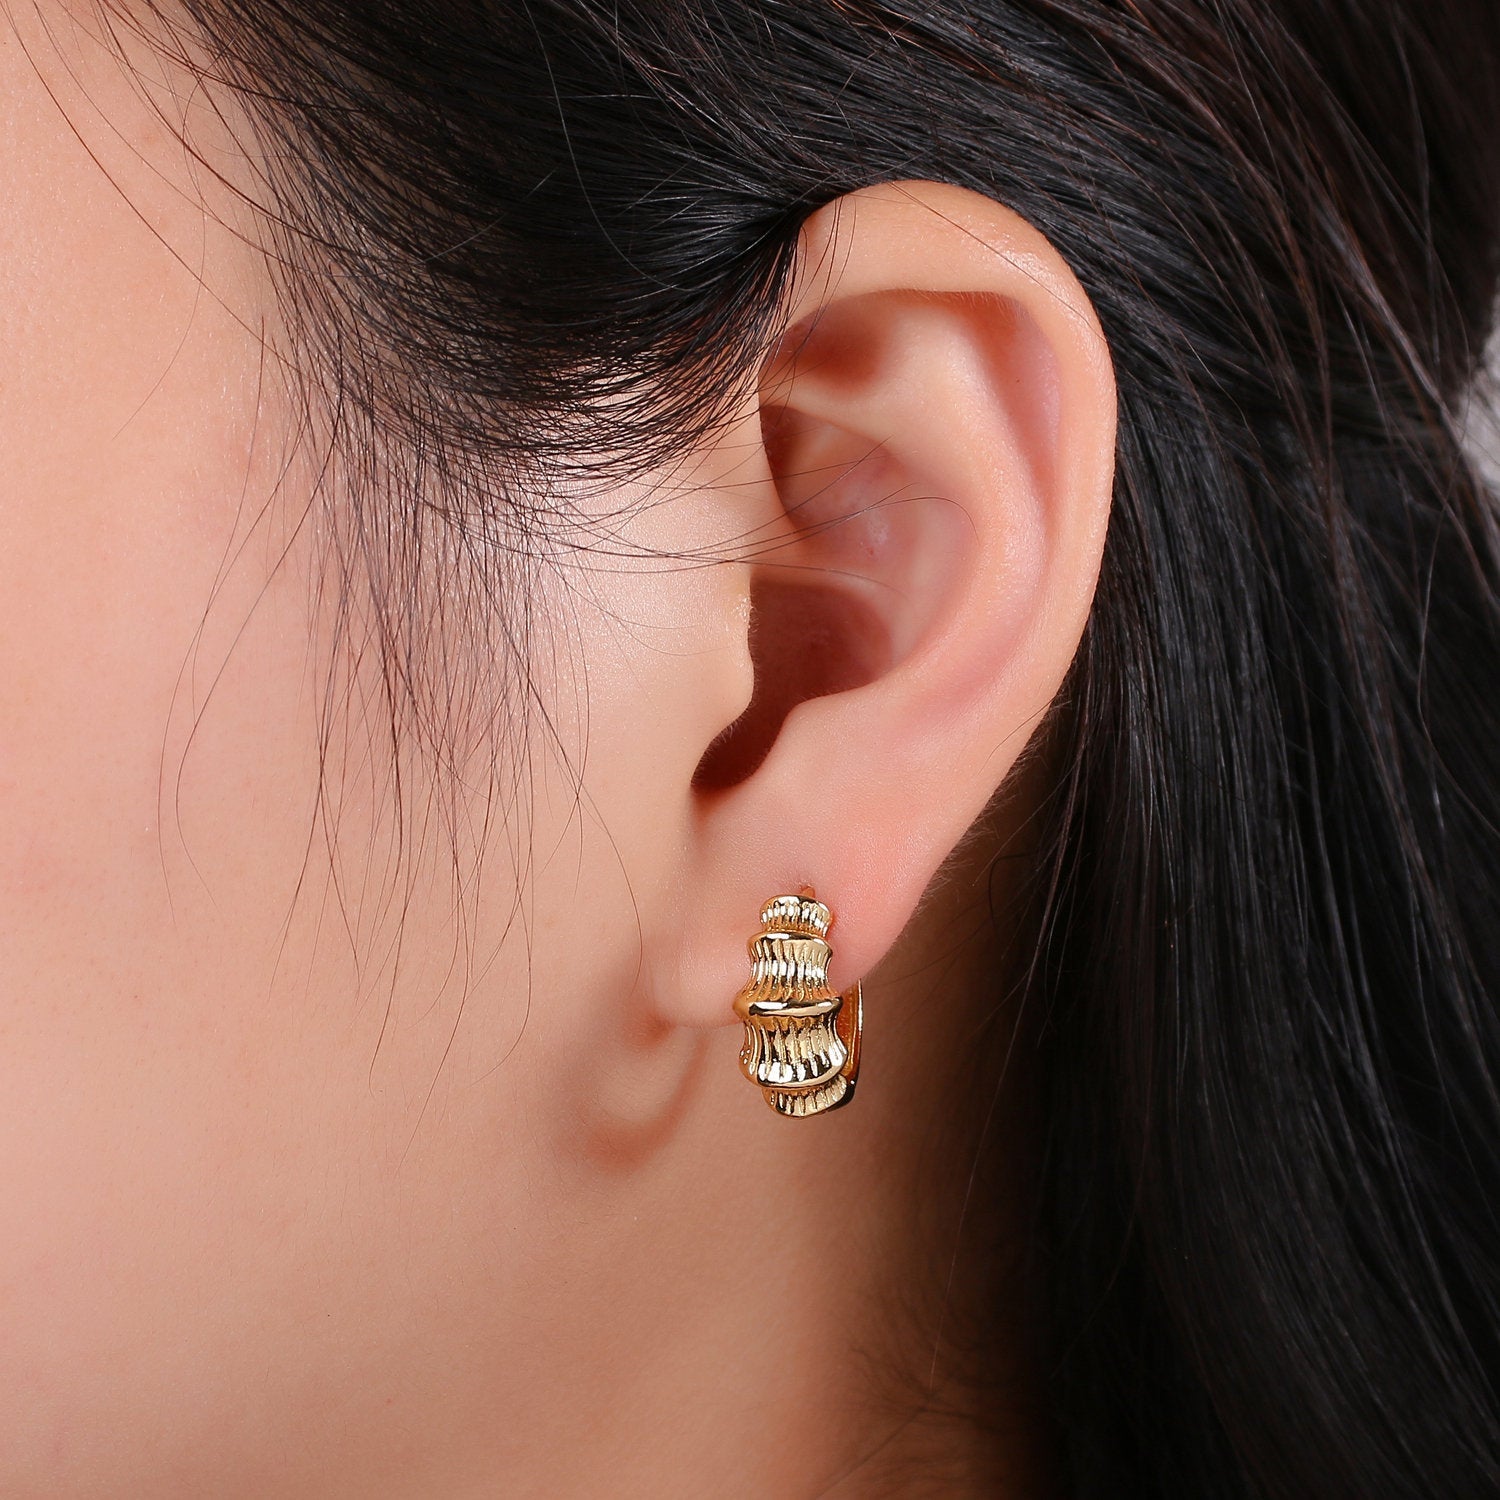 24k Vermeil Gold Earrings, Huggie Earring, Dainty Earrings, Chunky Bamboo Earrings, Everyday Wear Earrings 15mm Earring - DLUXCA